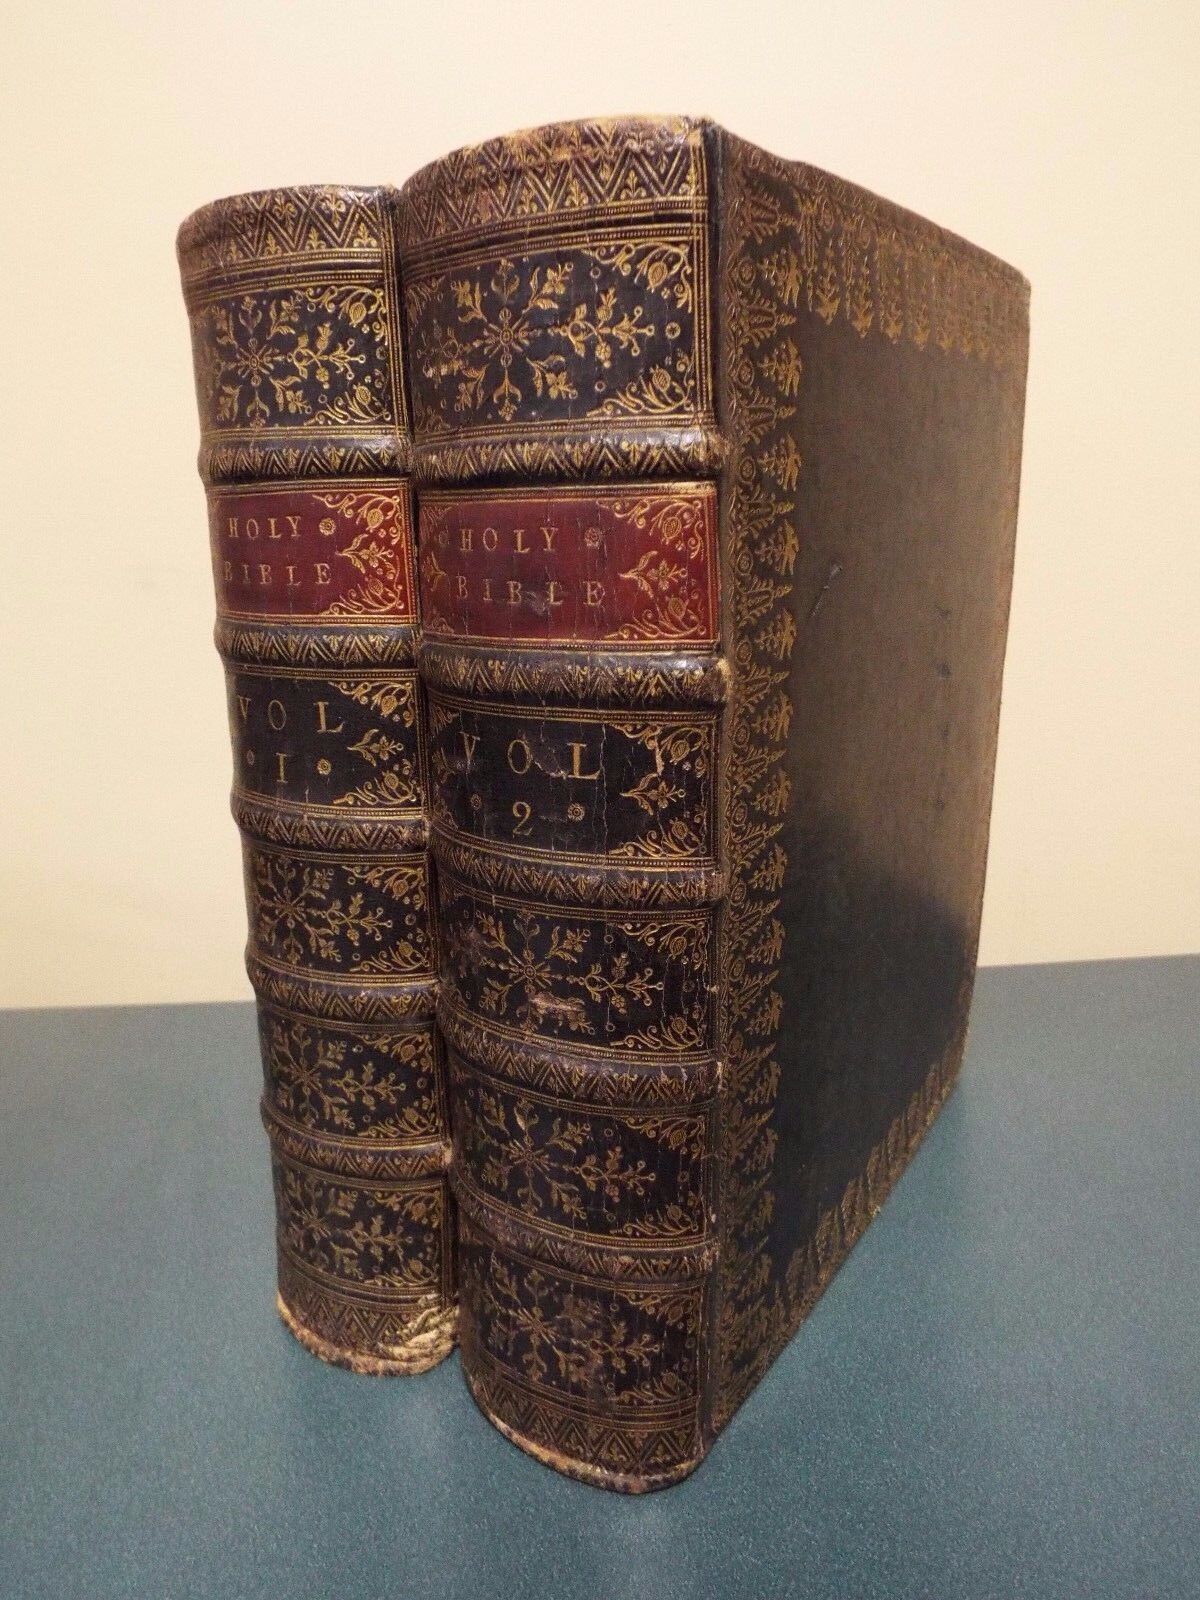 1762 - 2 Volume King James Bible - First Edition - Paris Revision - Cambridge Un